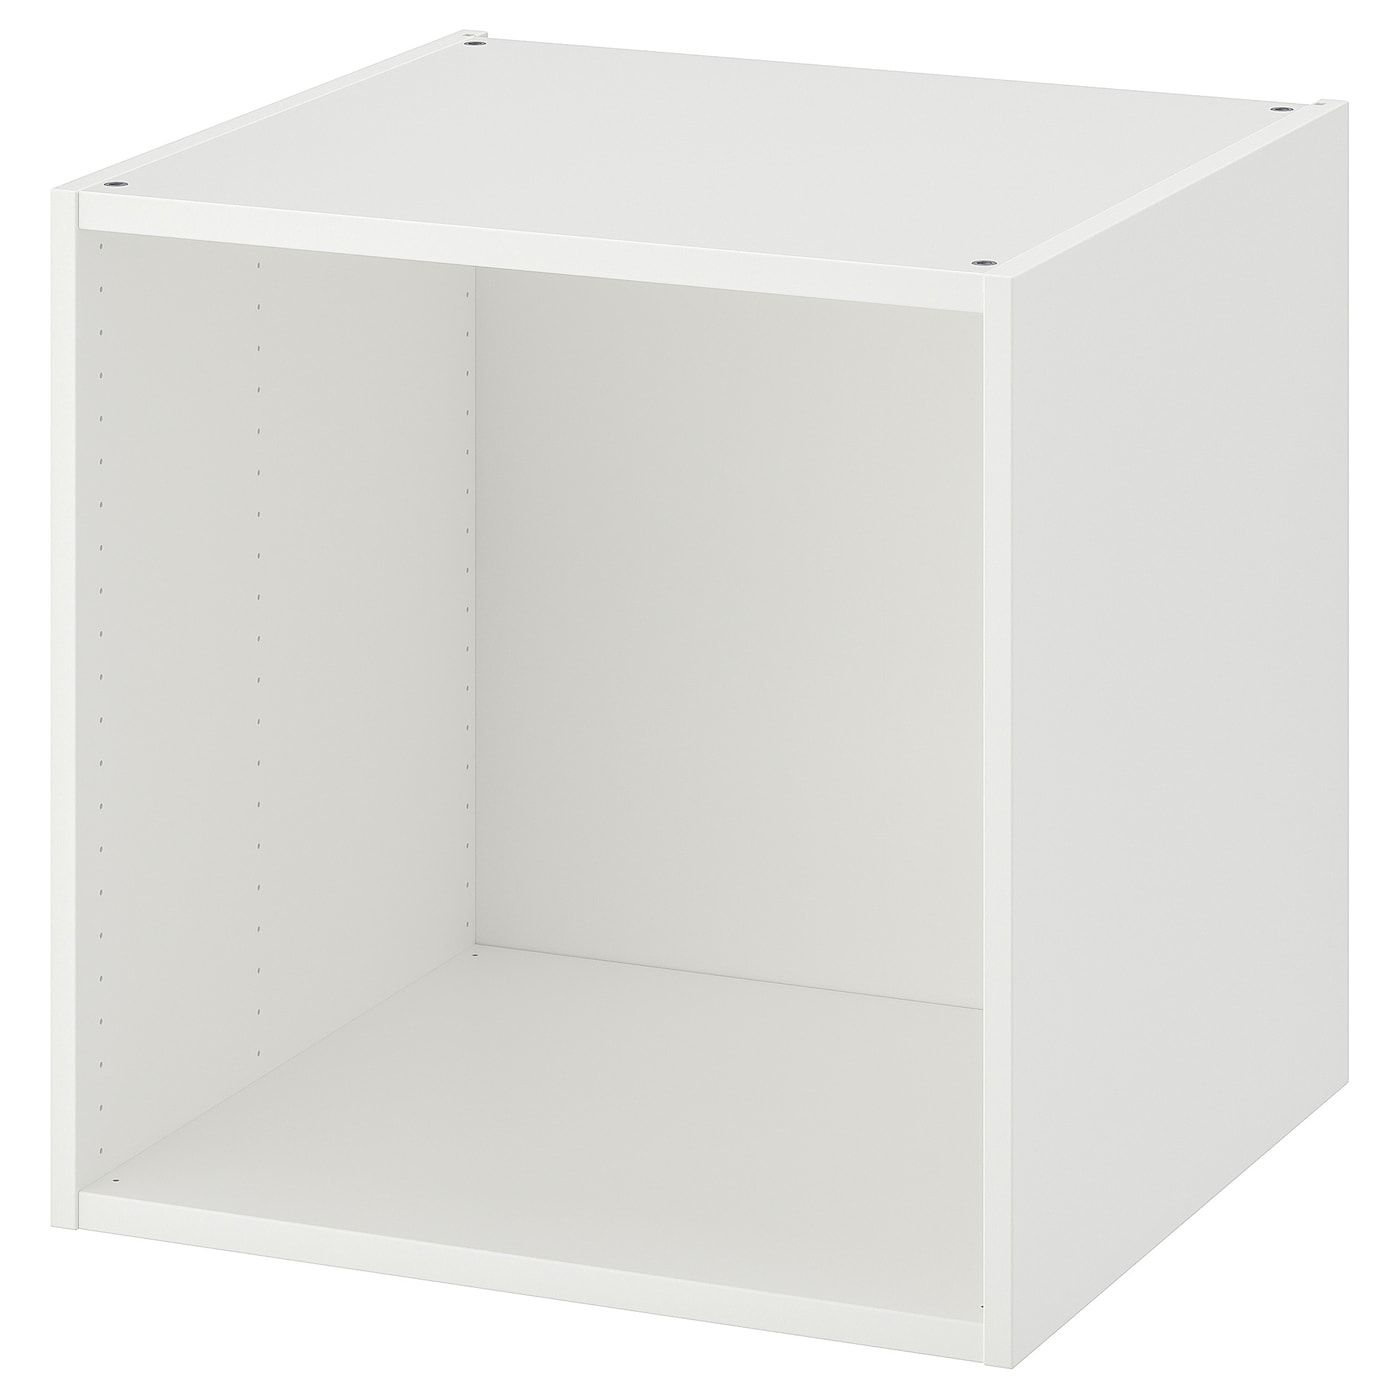 Каркас гардероба - PLATSA IKEA/ПЛАТСА ИКЕА, 60х55х60 см, белый